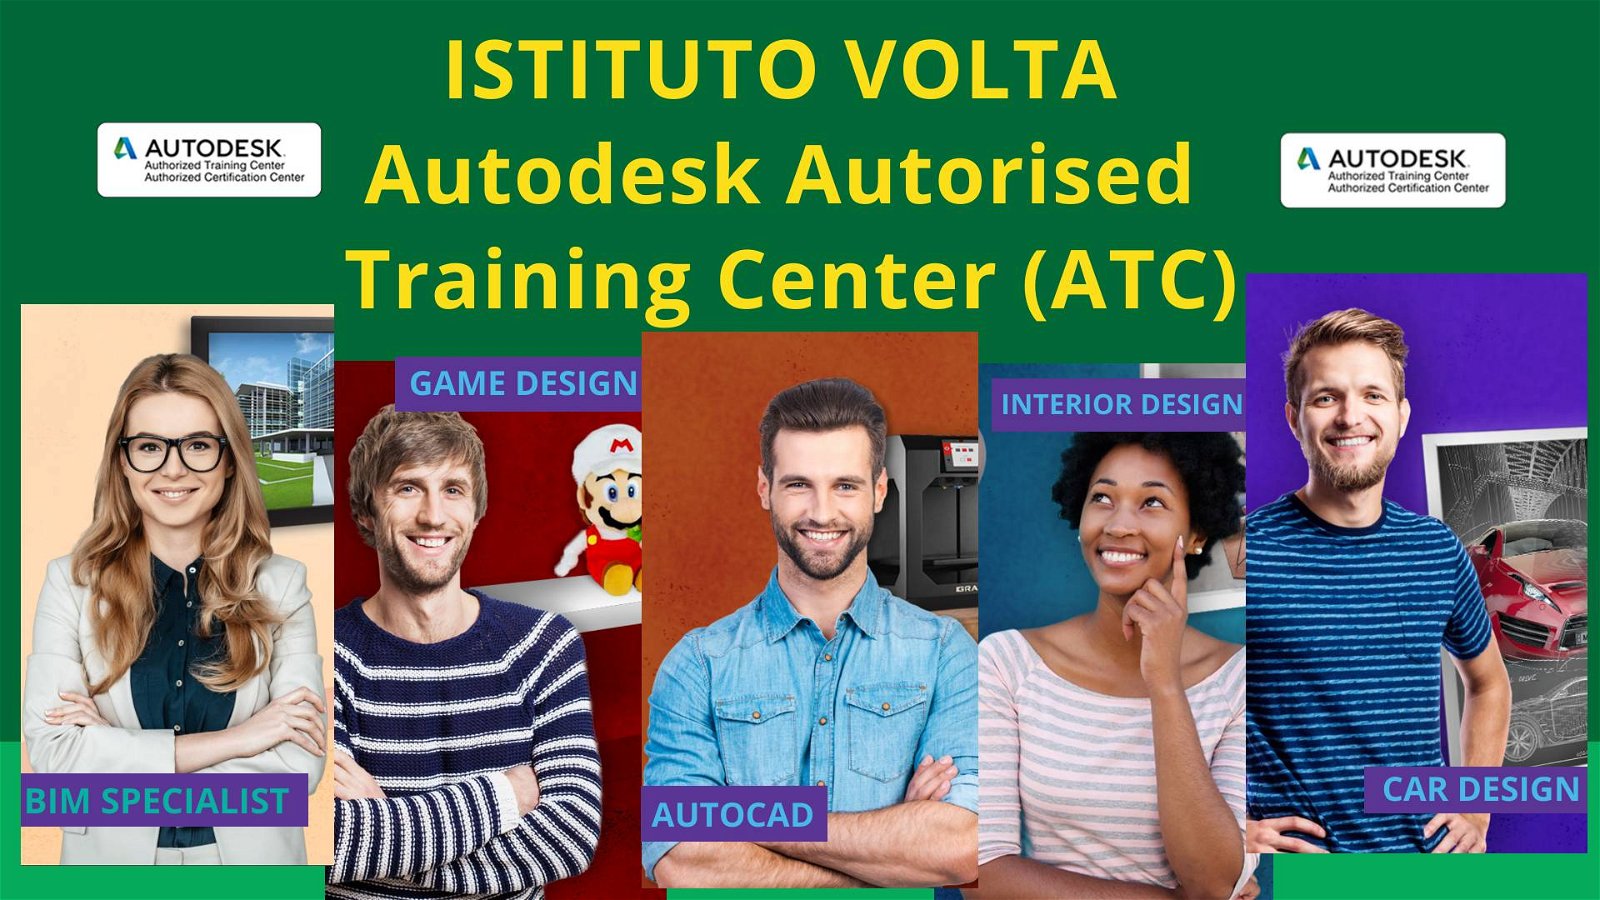 Immagine di Diventa esperto Autodesk certificato con Istituto Volta